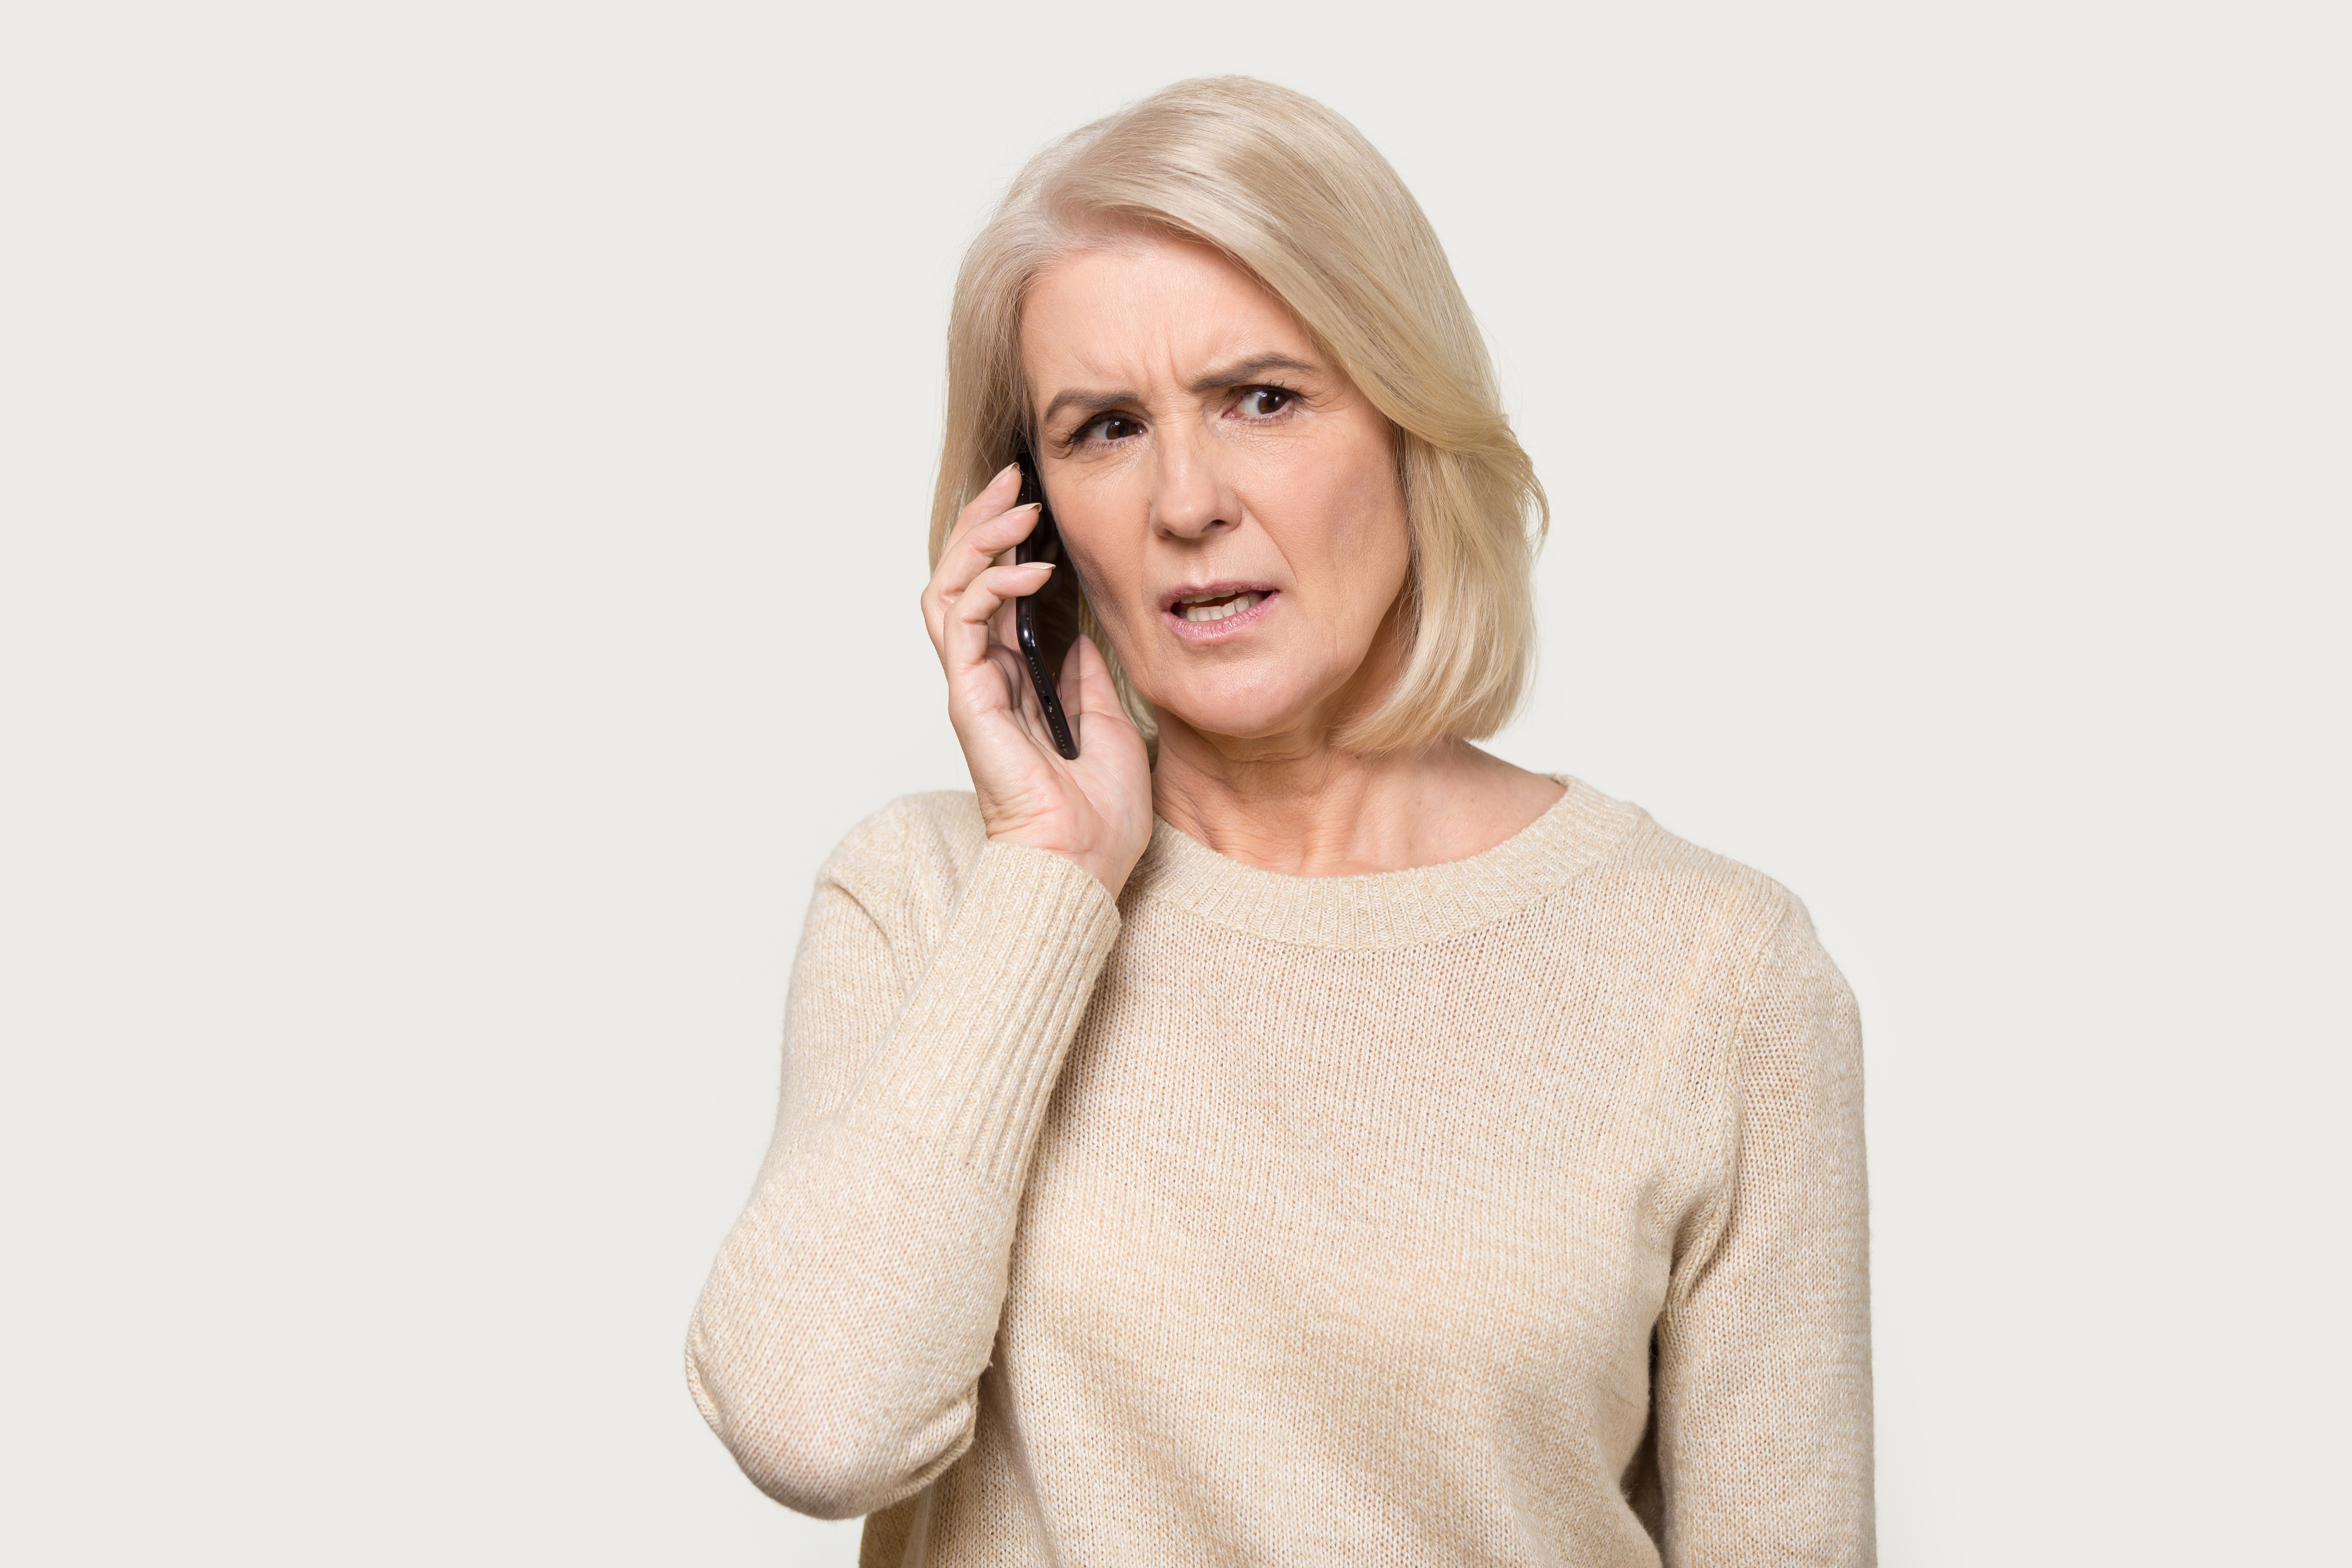 Mujer hablando por teléfono con expresión preocupada | Fuente: Shutterstock